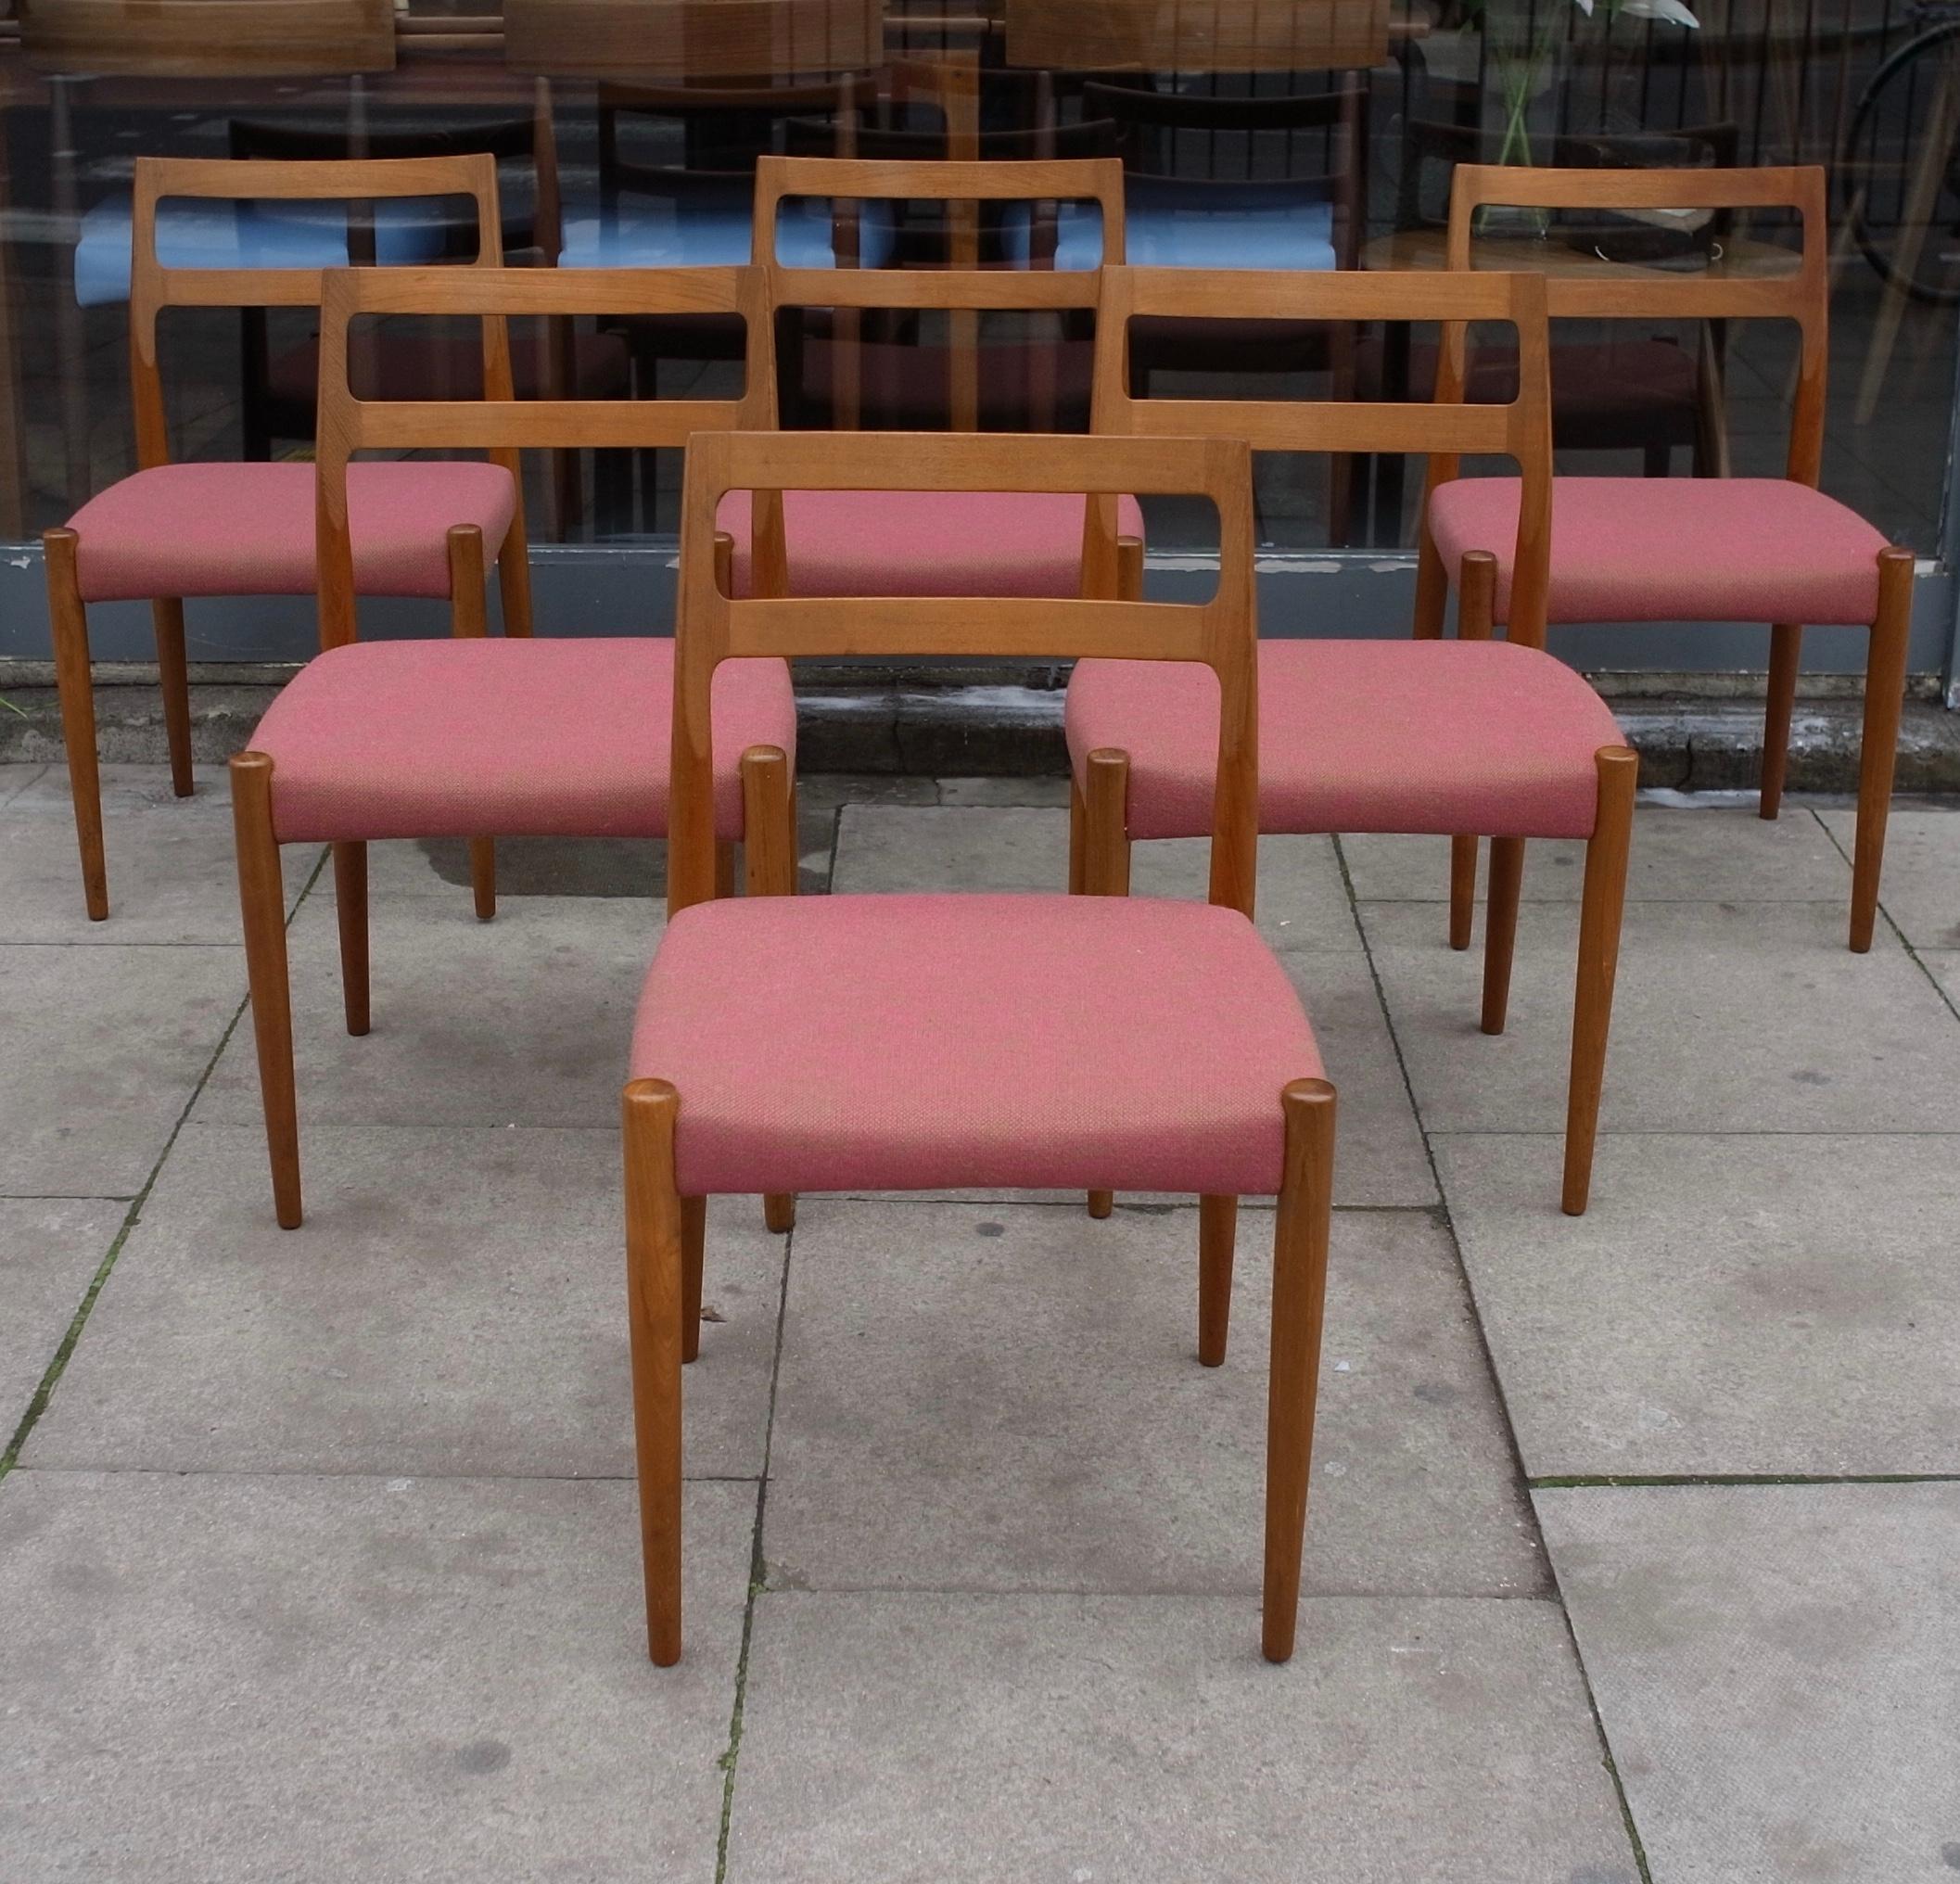 Un ensemble très stylé, élégant et rare de six chaises de salle à manger danoises des années 1960, conçues par Johannes Andersen et produites par Uldum Mobelfabrik. Créé en teck massif et recouvert d'un textile de qualité de couleur rose rougeâtre.